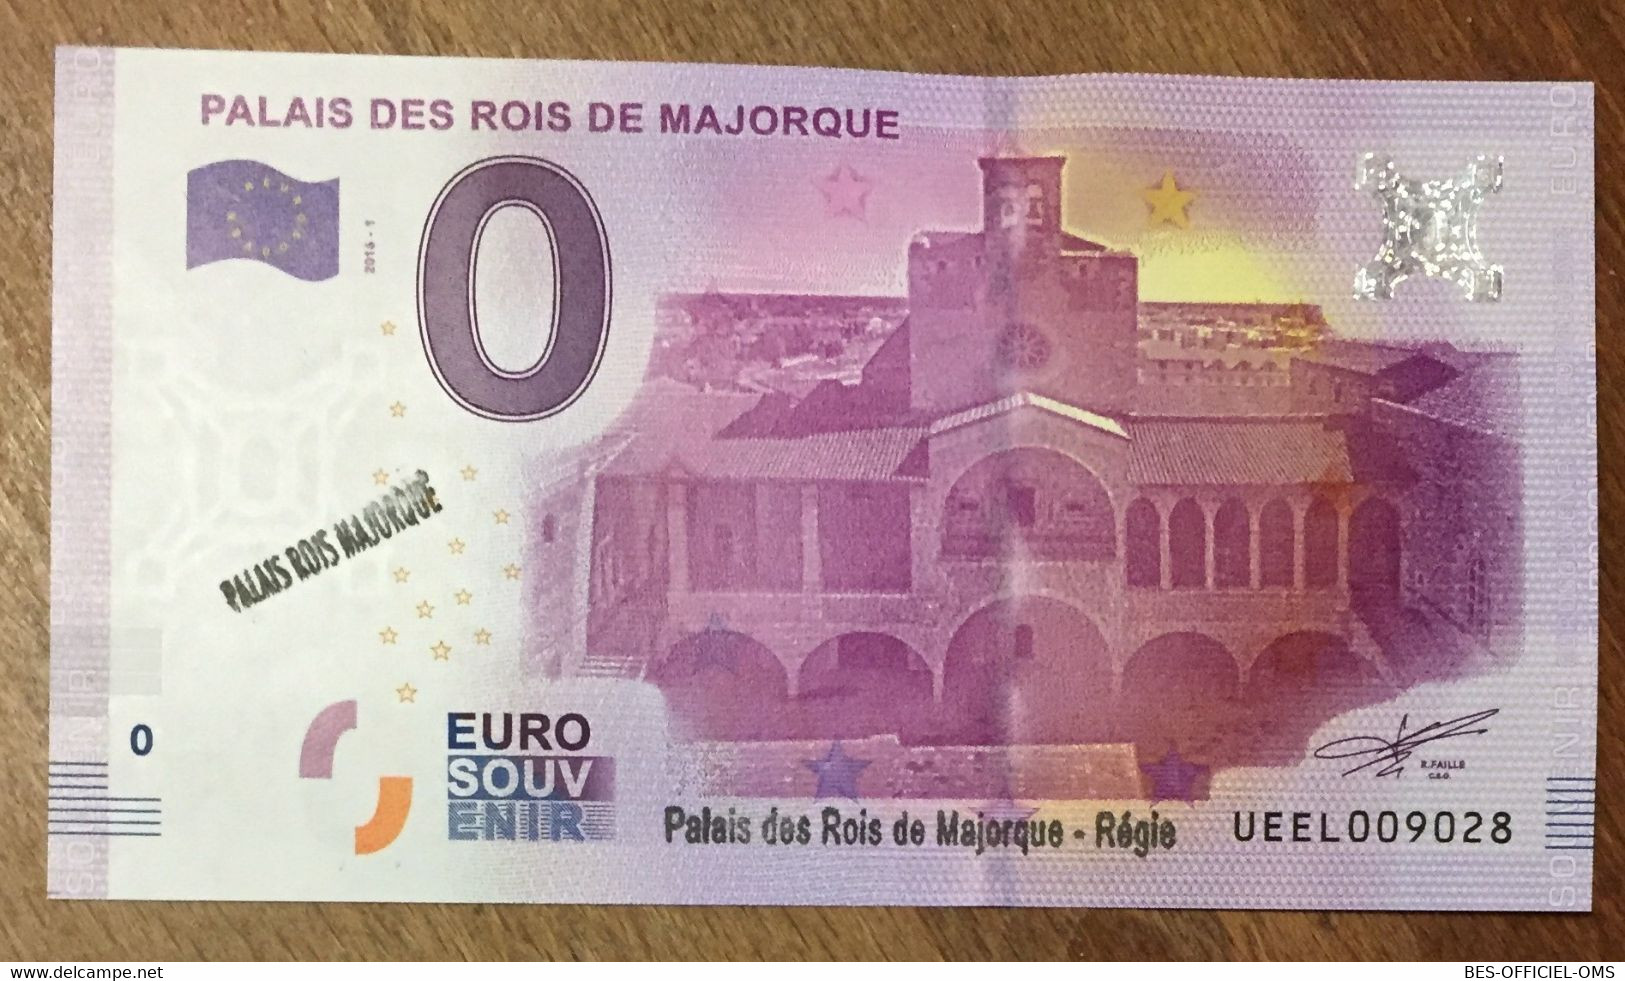 2016 BILLET 0 EURO SOUVENIR DPT 66 PALAIS DES ROIS DE MAJORQUE + TAMPONS ZERO 0 EURO SCHEIN BANKNOTE PAPER MONEY - Private Proofs / Unofficial